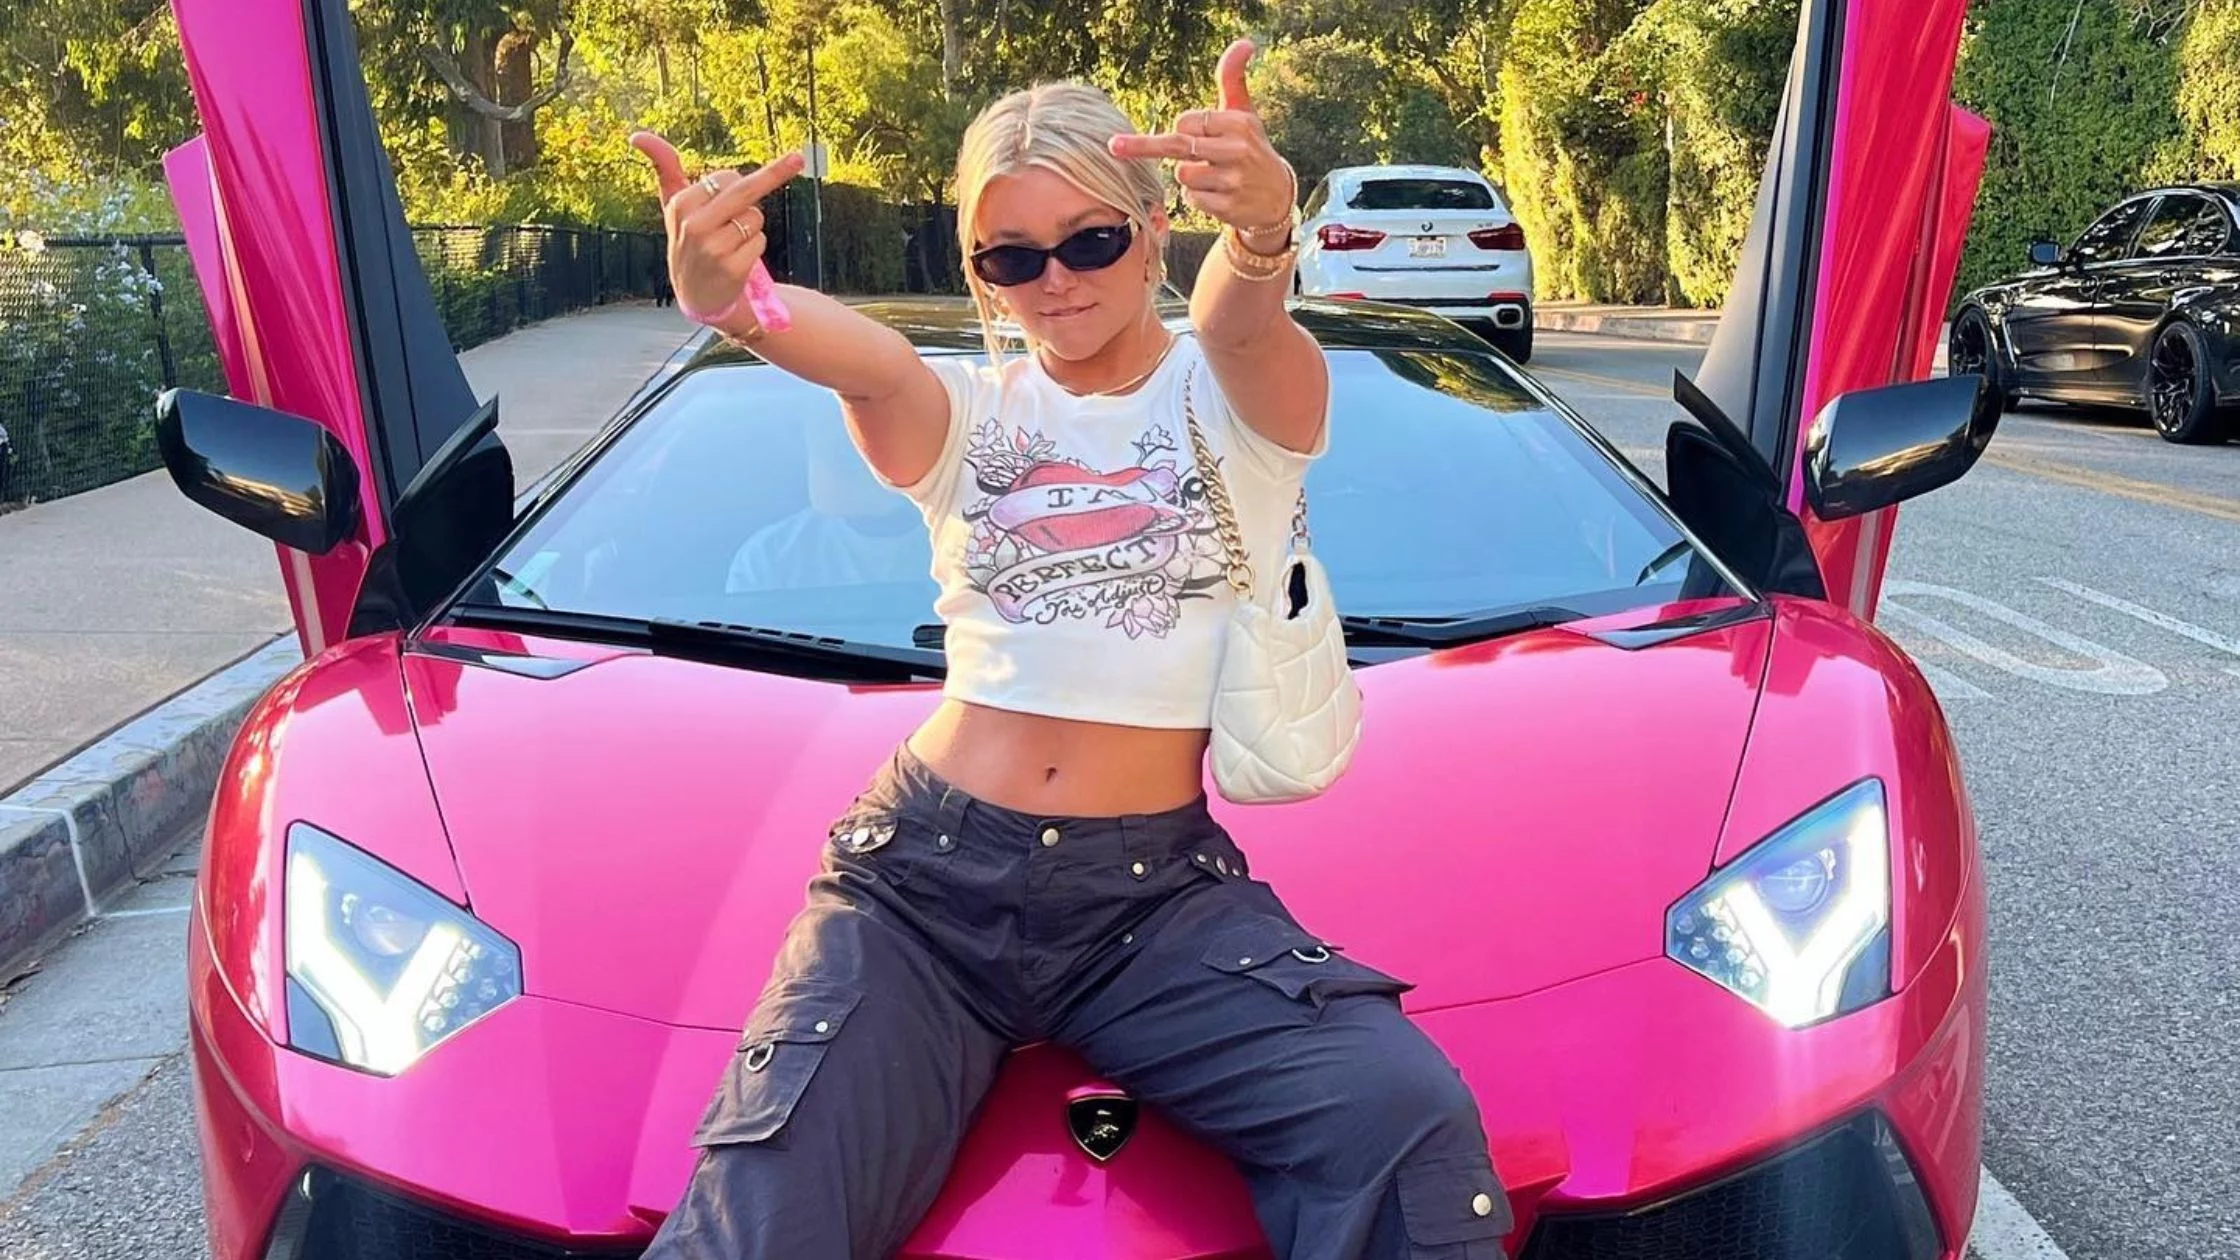 Katie posing in front of her pink Lamborghini car. 